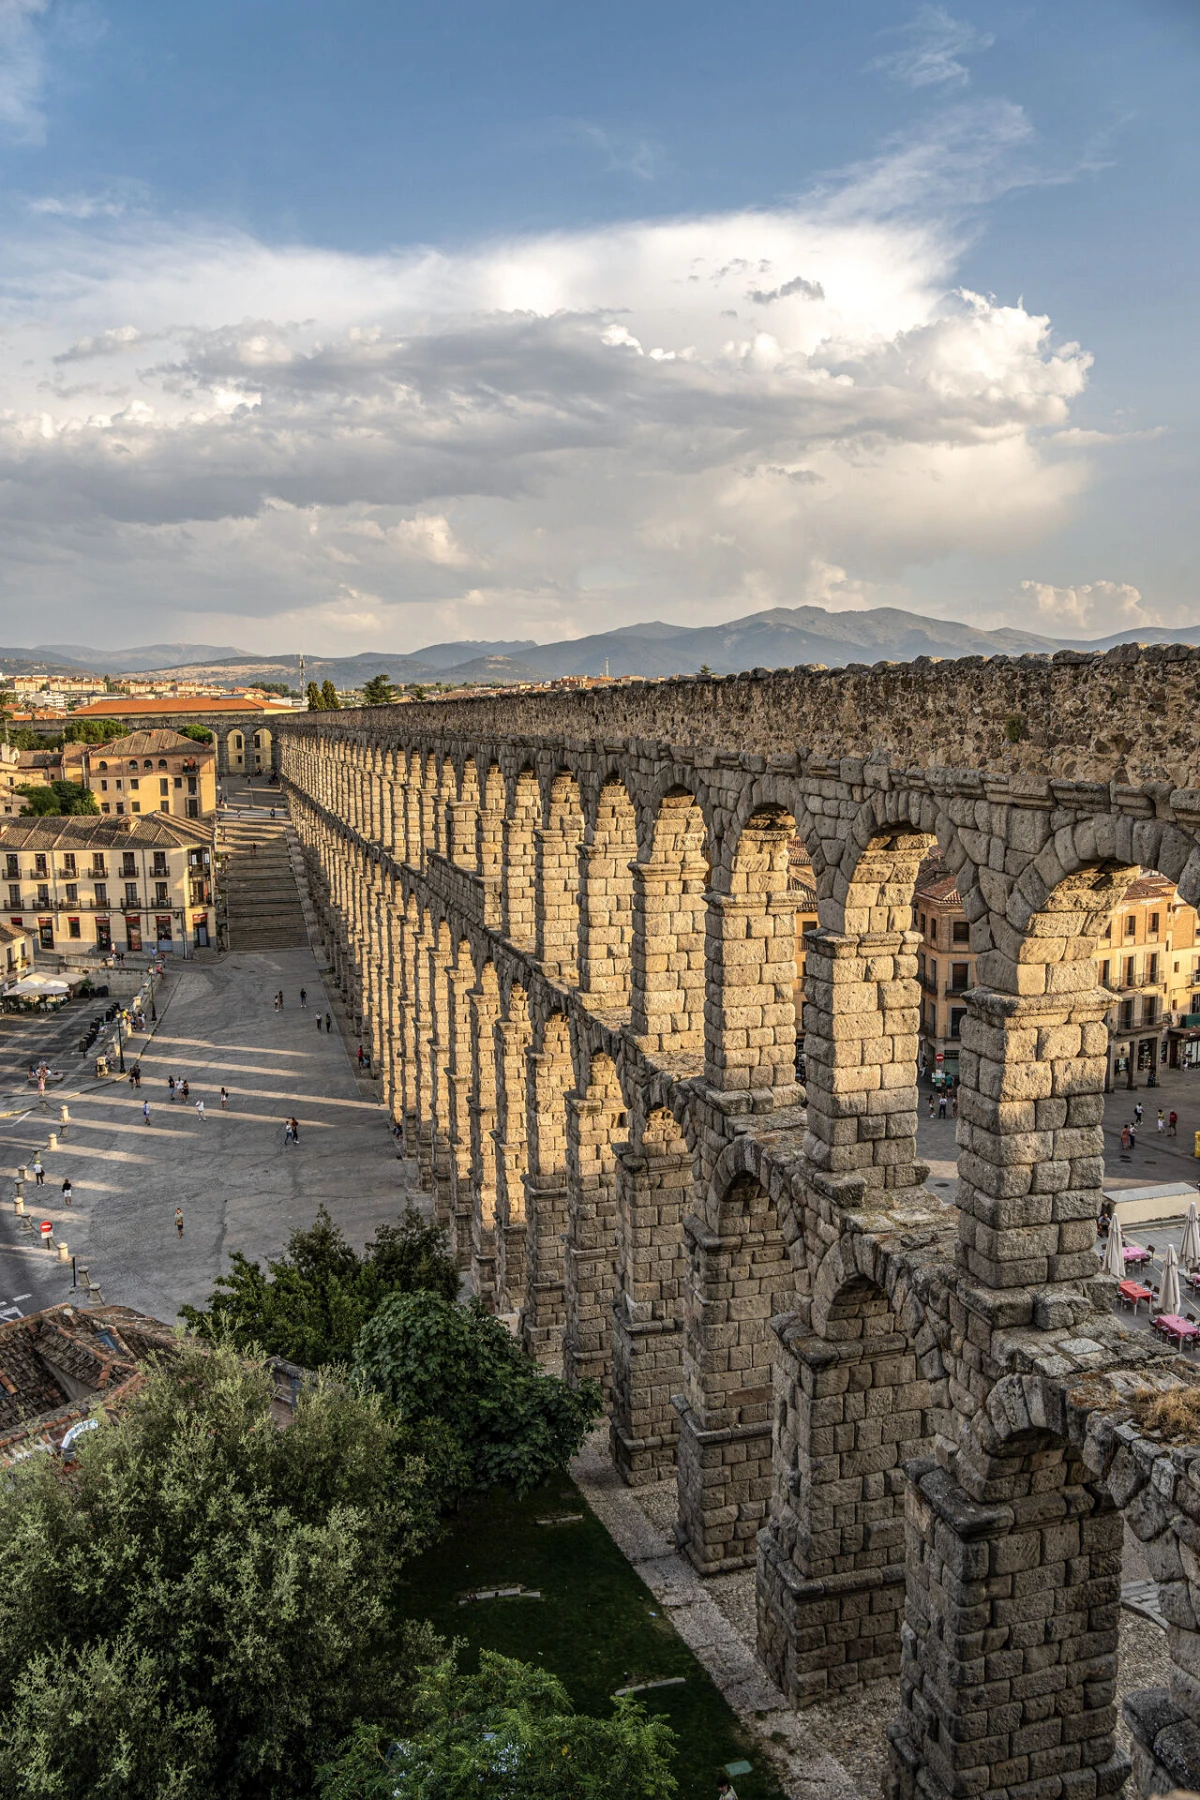 Das Aquädukt von Segovia in Zentralspanien stammt aus der Blütezeit des römischen Imperiums und führte jahrhundertelang frisches Quellwasser aus den Bergen der Sierra de Fuenfria über ca. 17 Kilometer Entfernung in die Stadt.